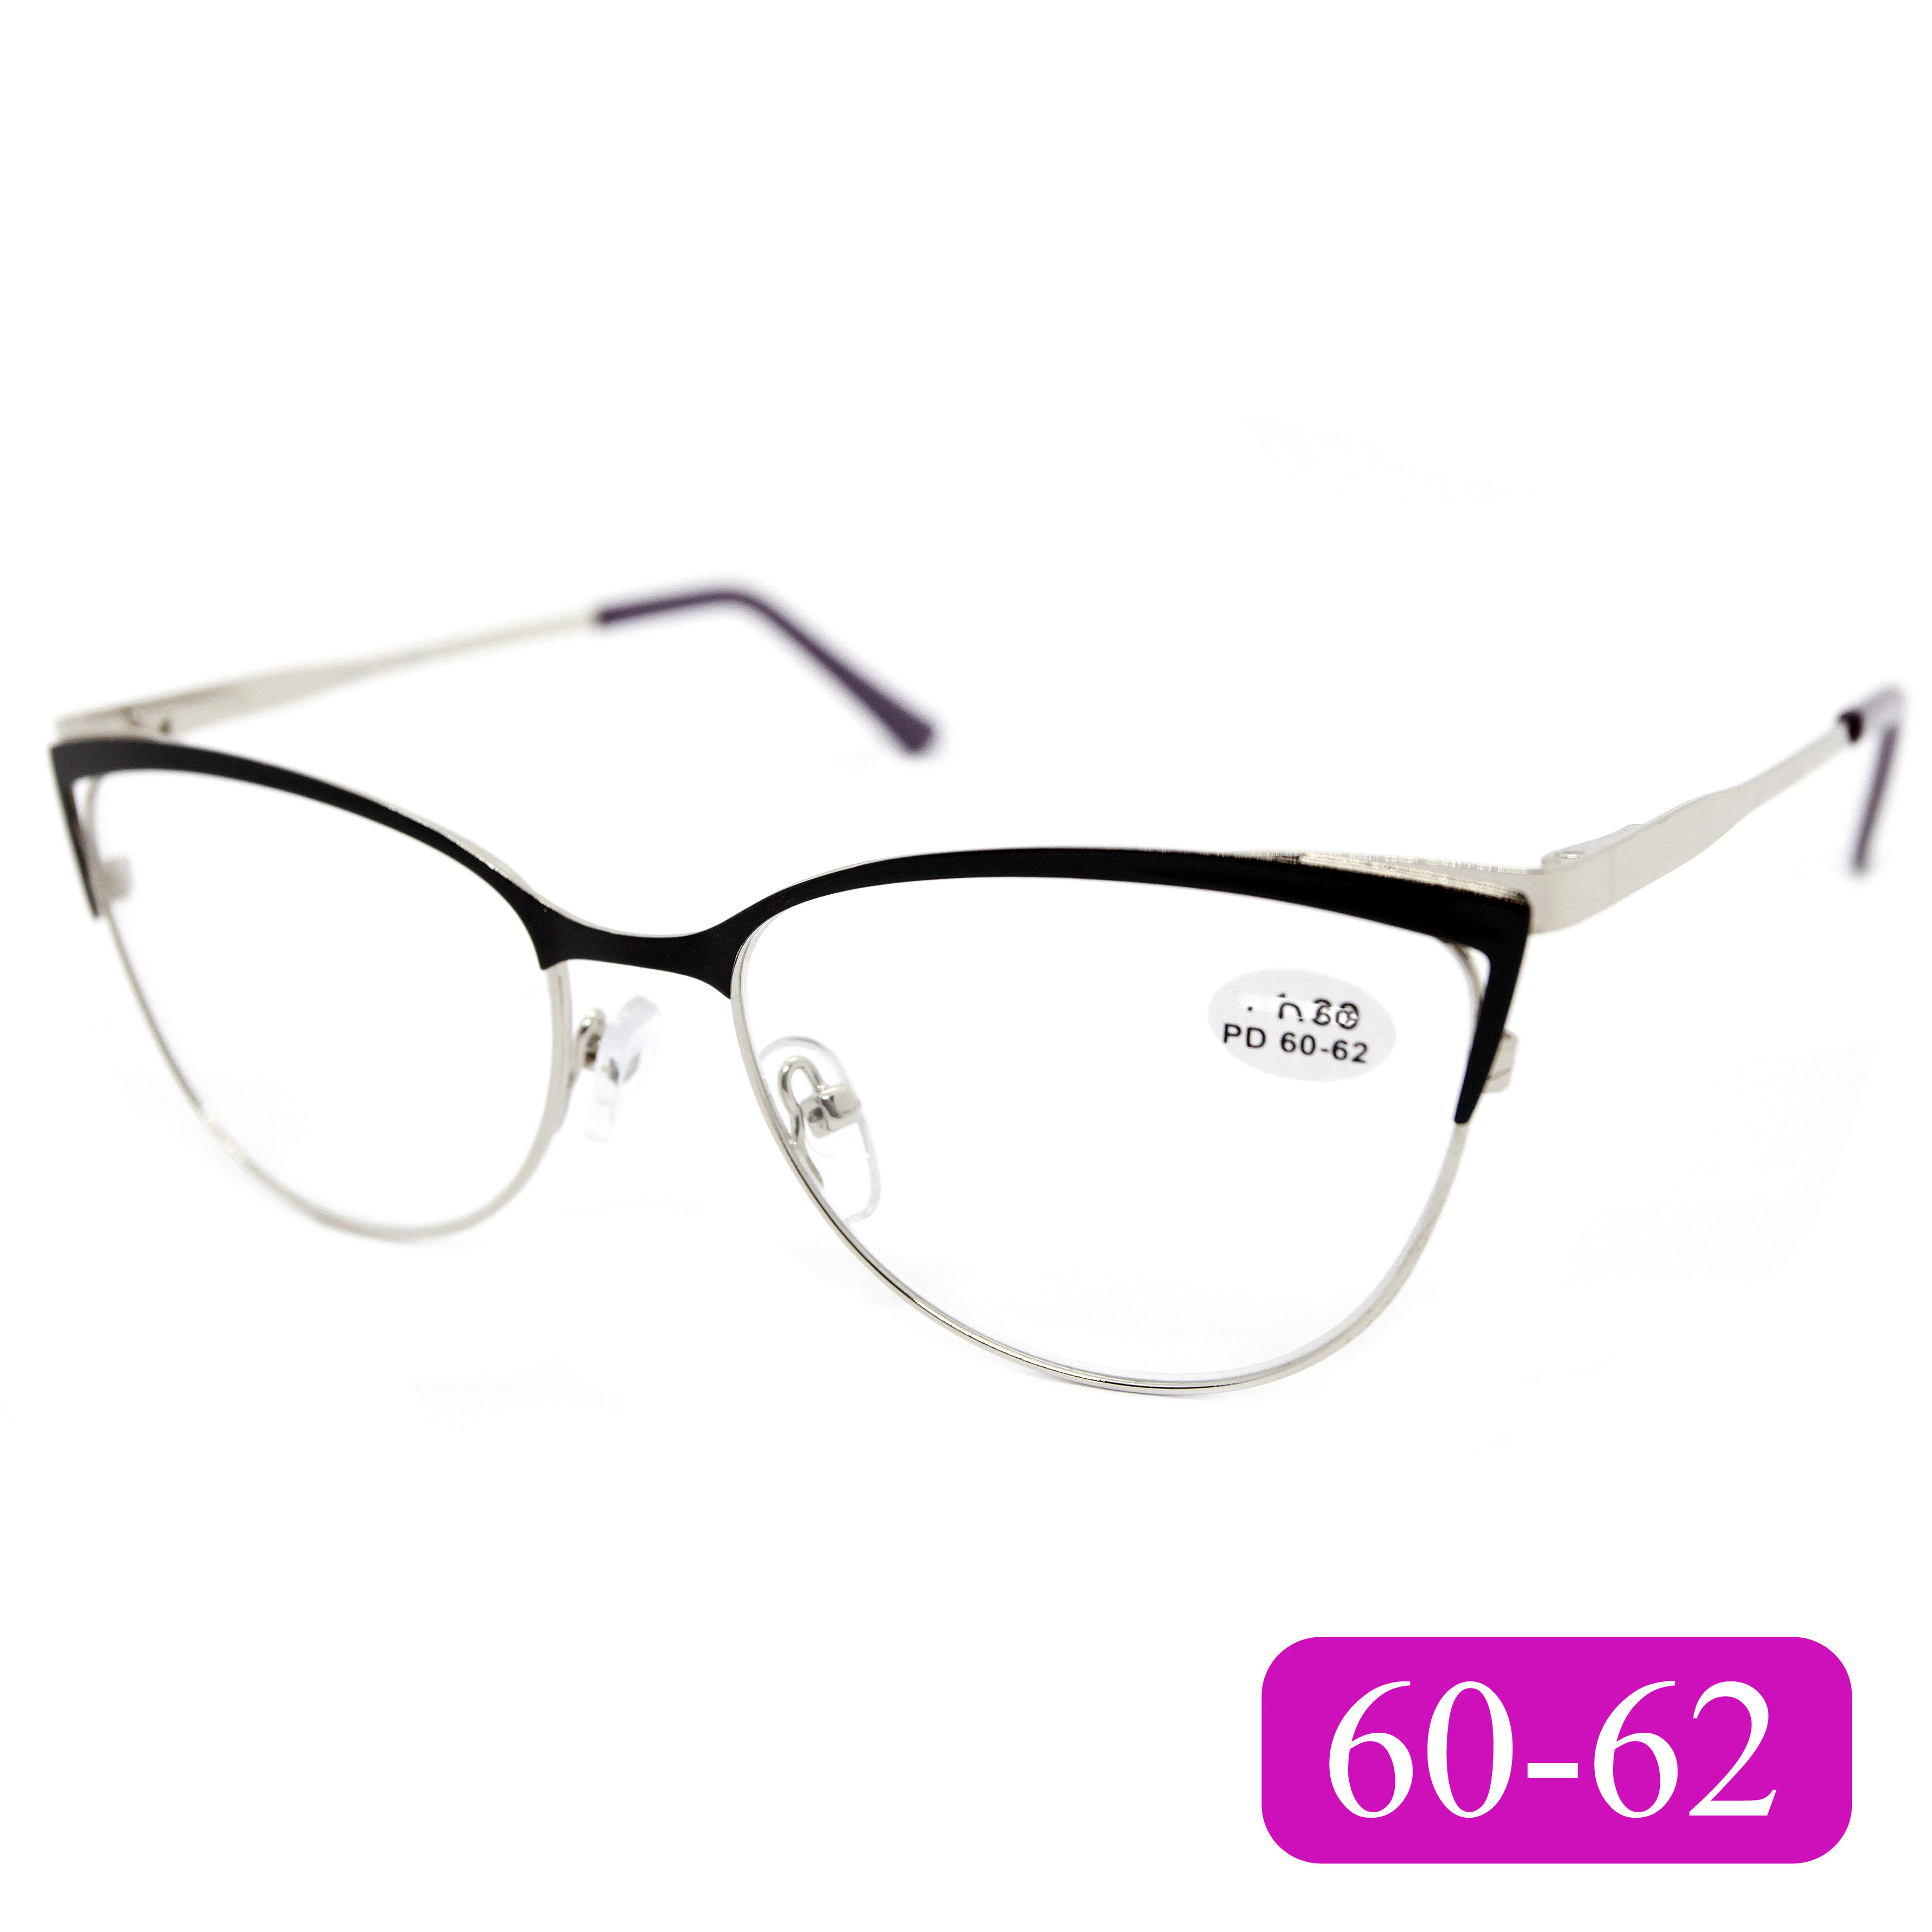 Готовые очки для зрения Glodiatr 1541 -3,50, без футляра, цвет черный, РЦ 60-62